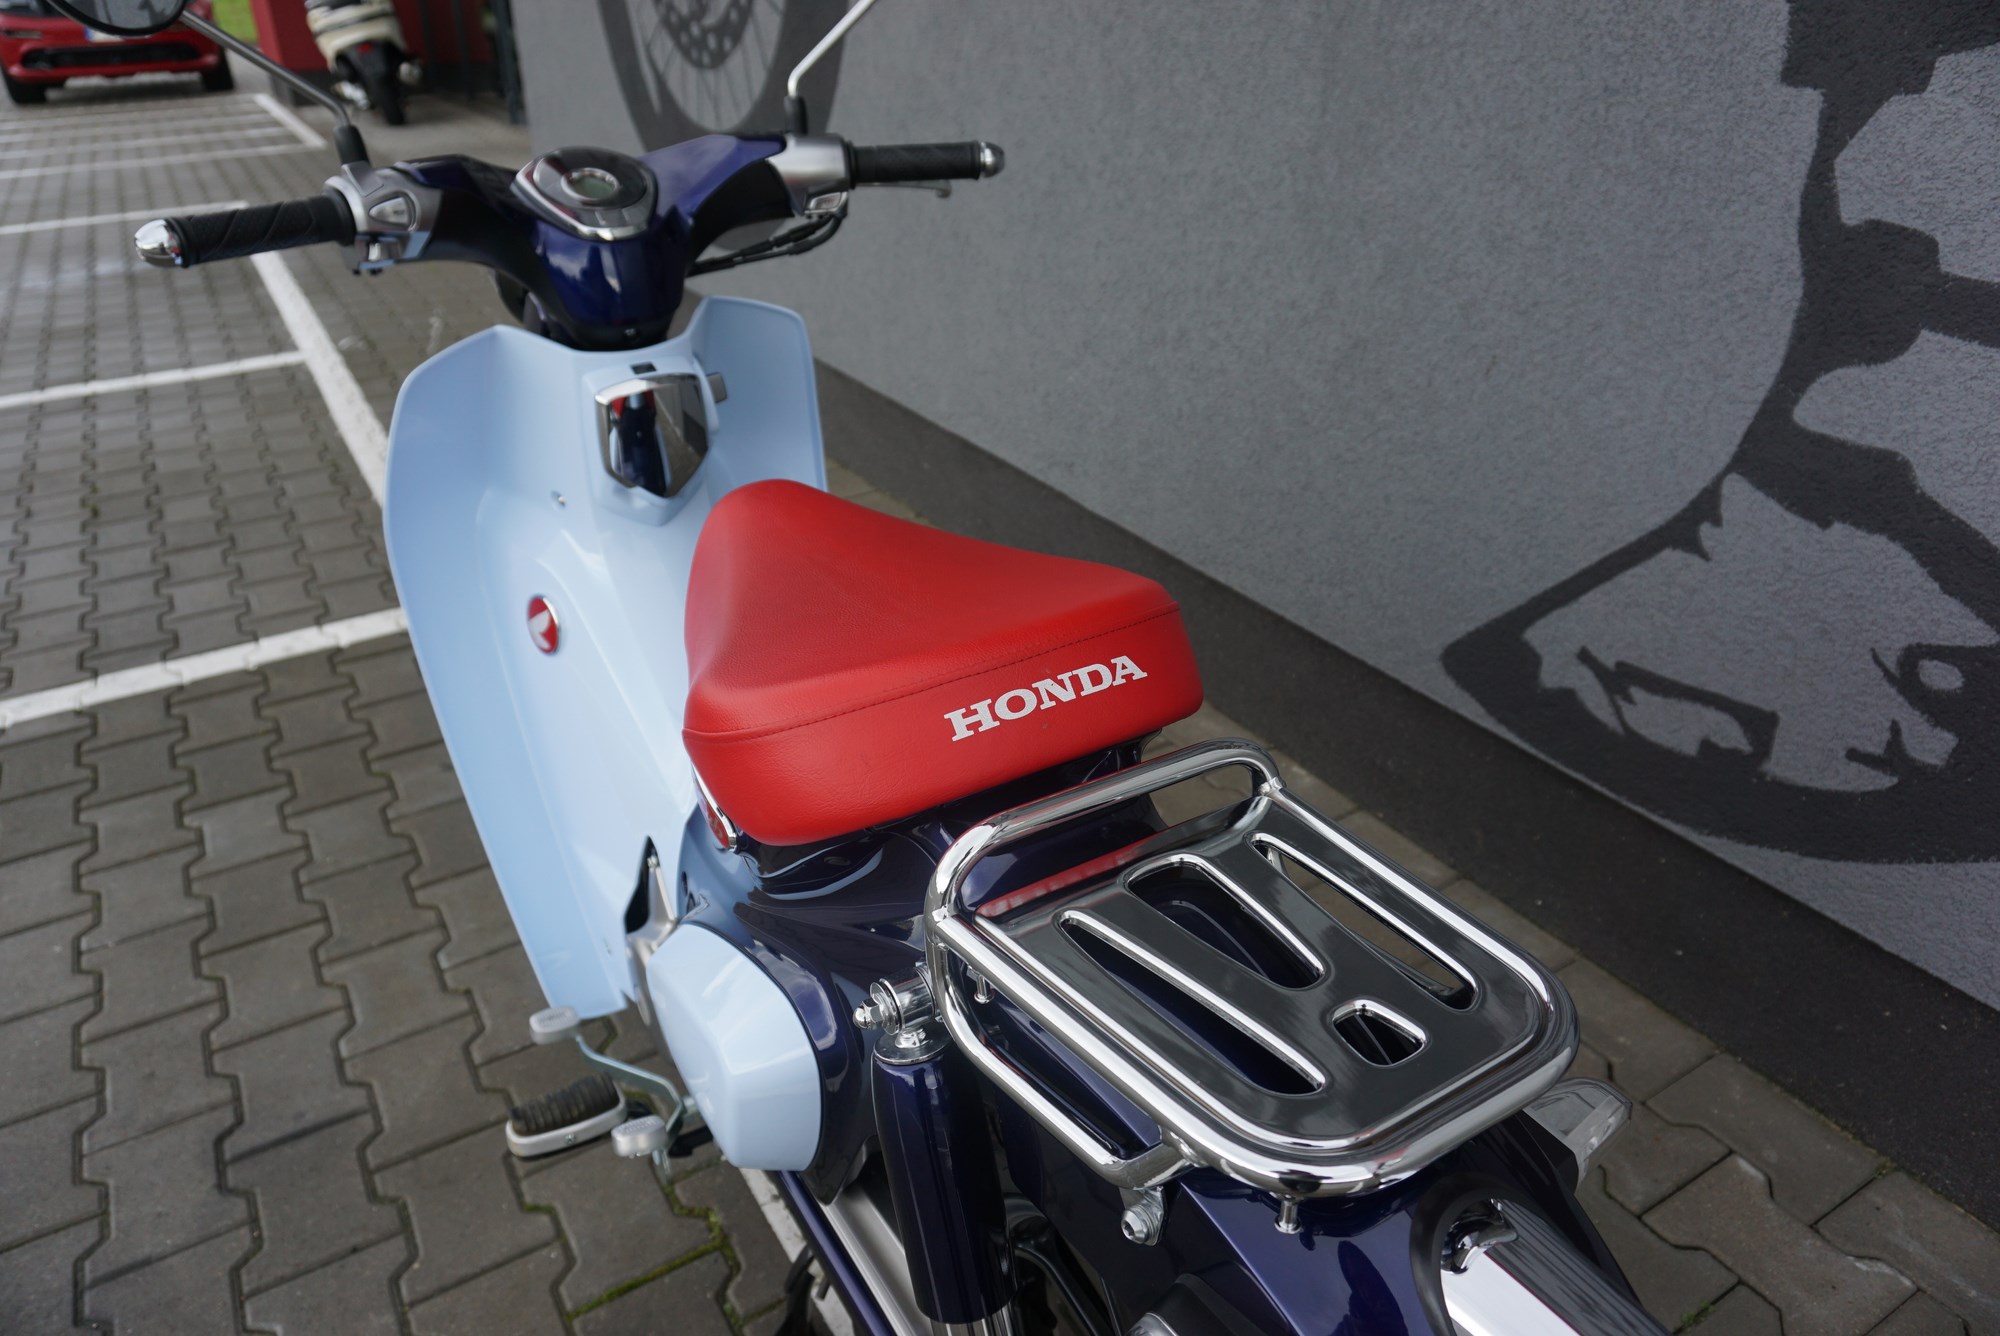 Honda Super Cub C125